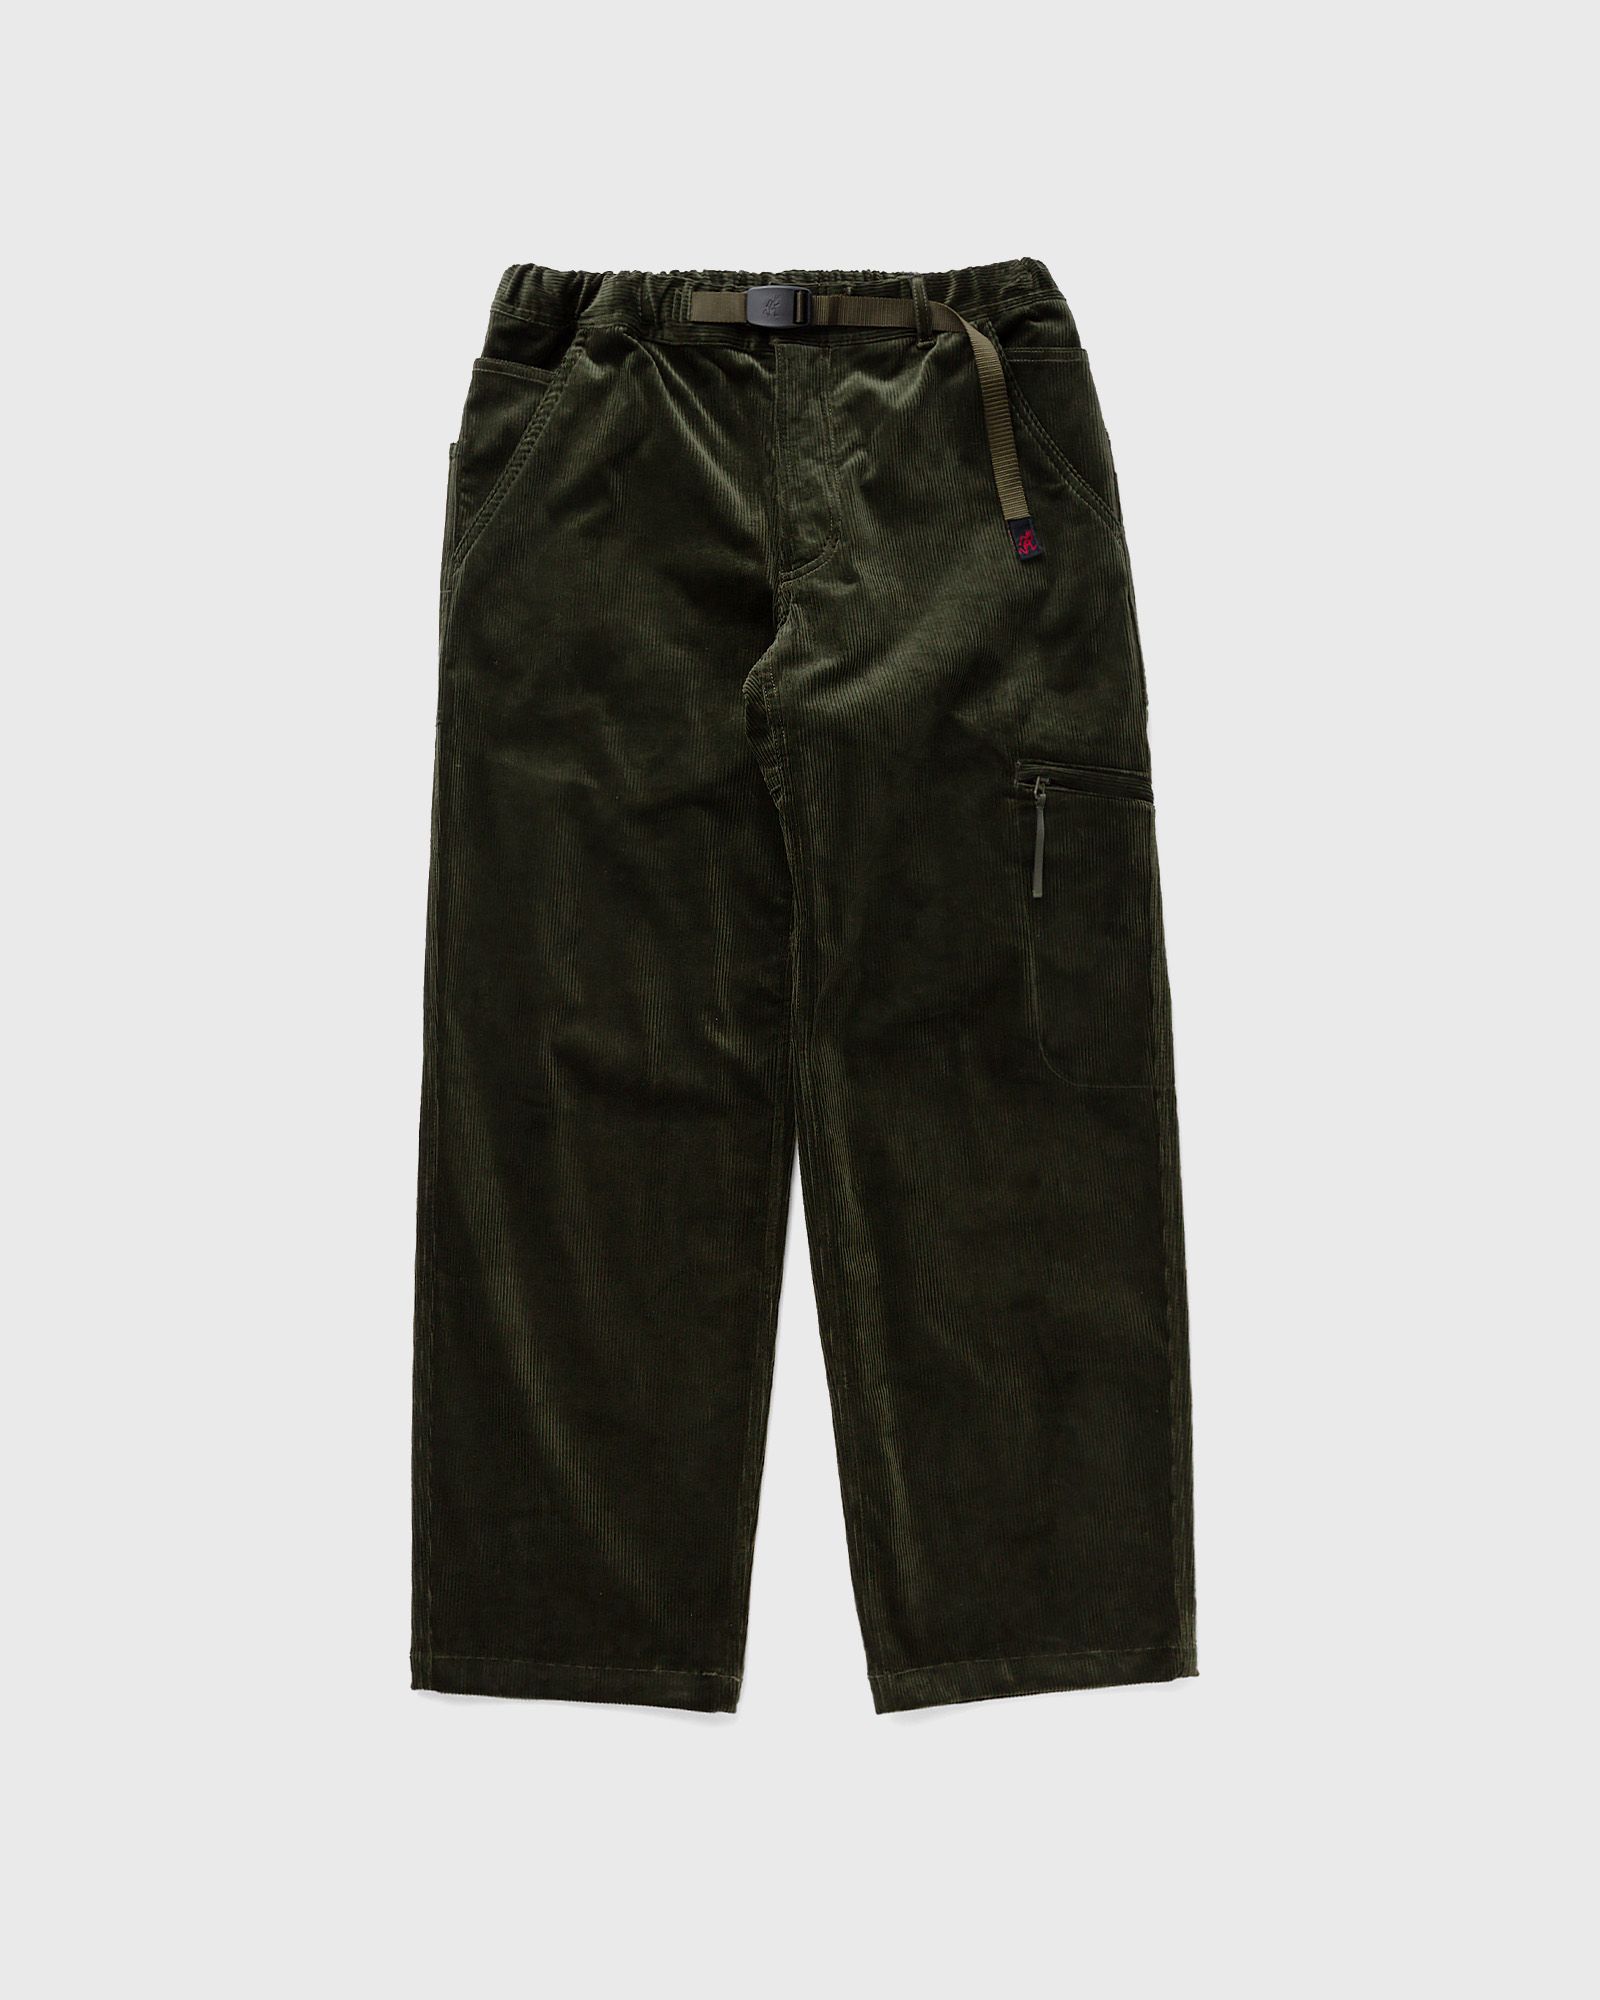 Gramicci - corduroy utility pant men casual pants green in größe:l